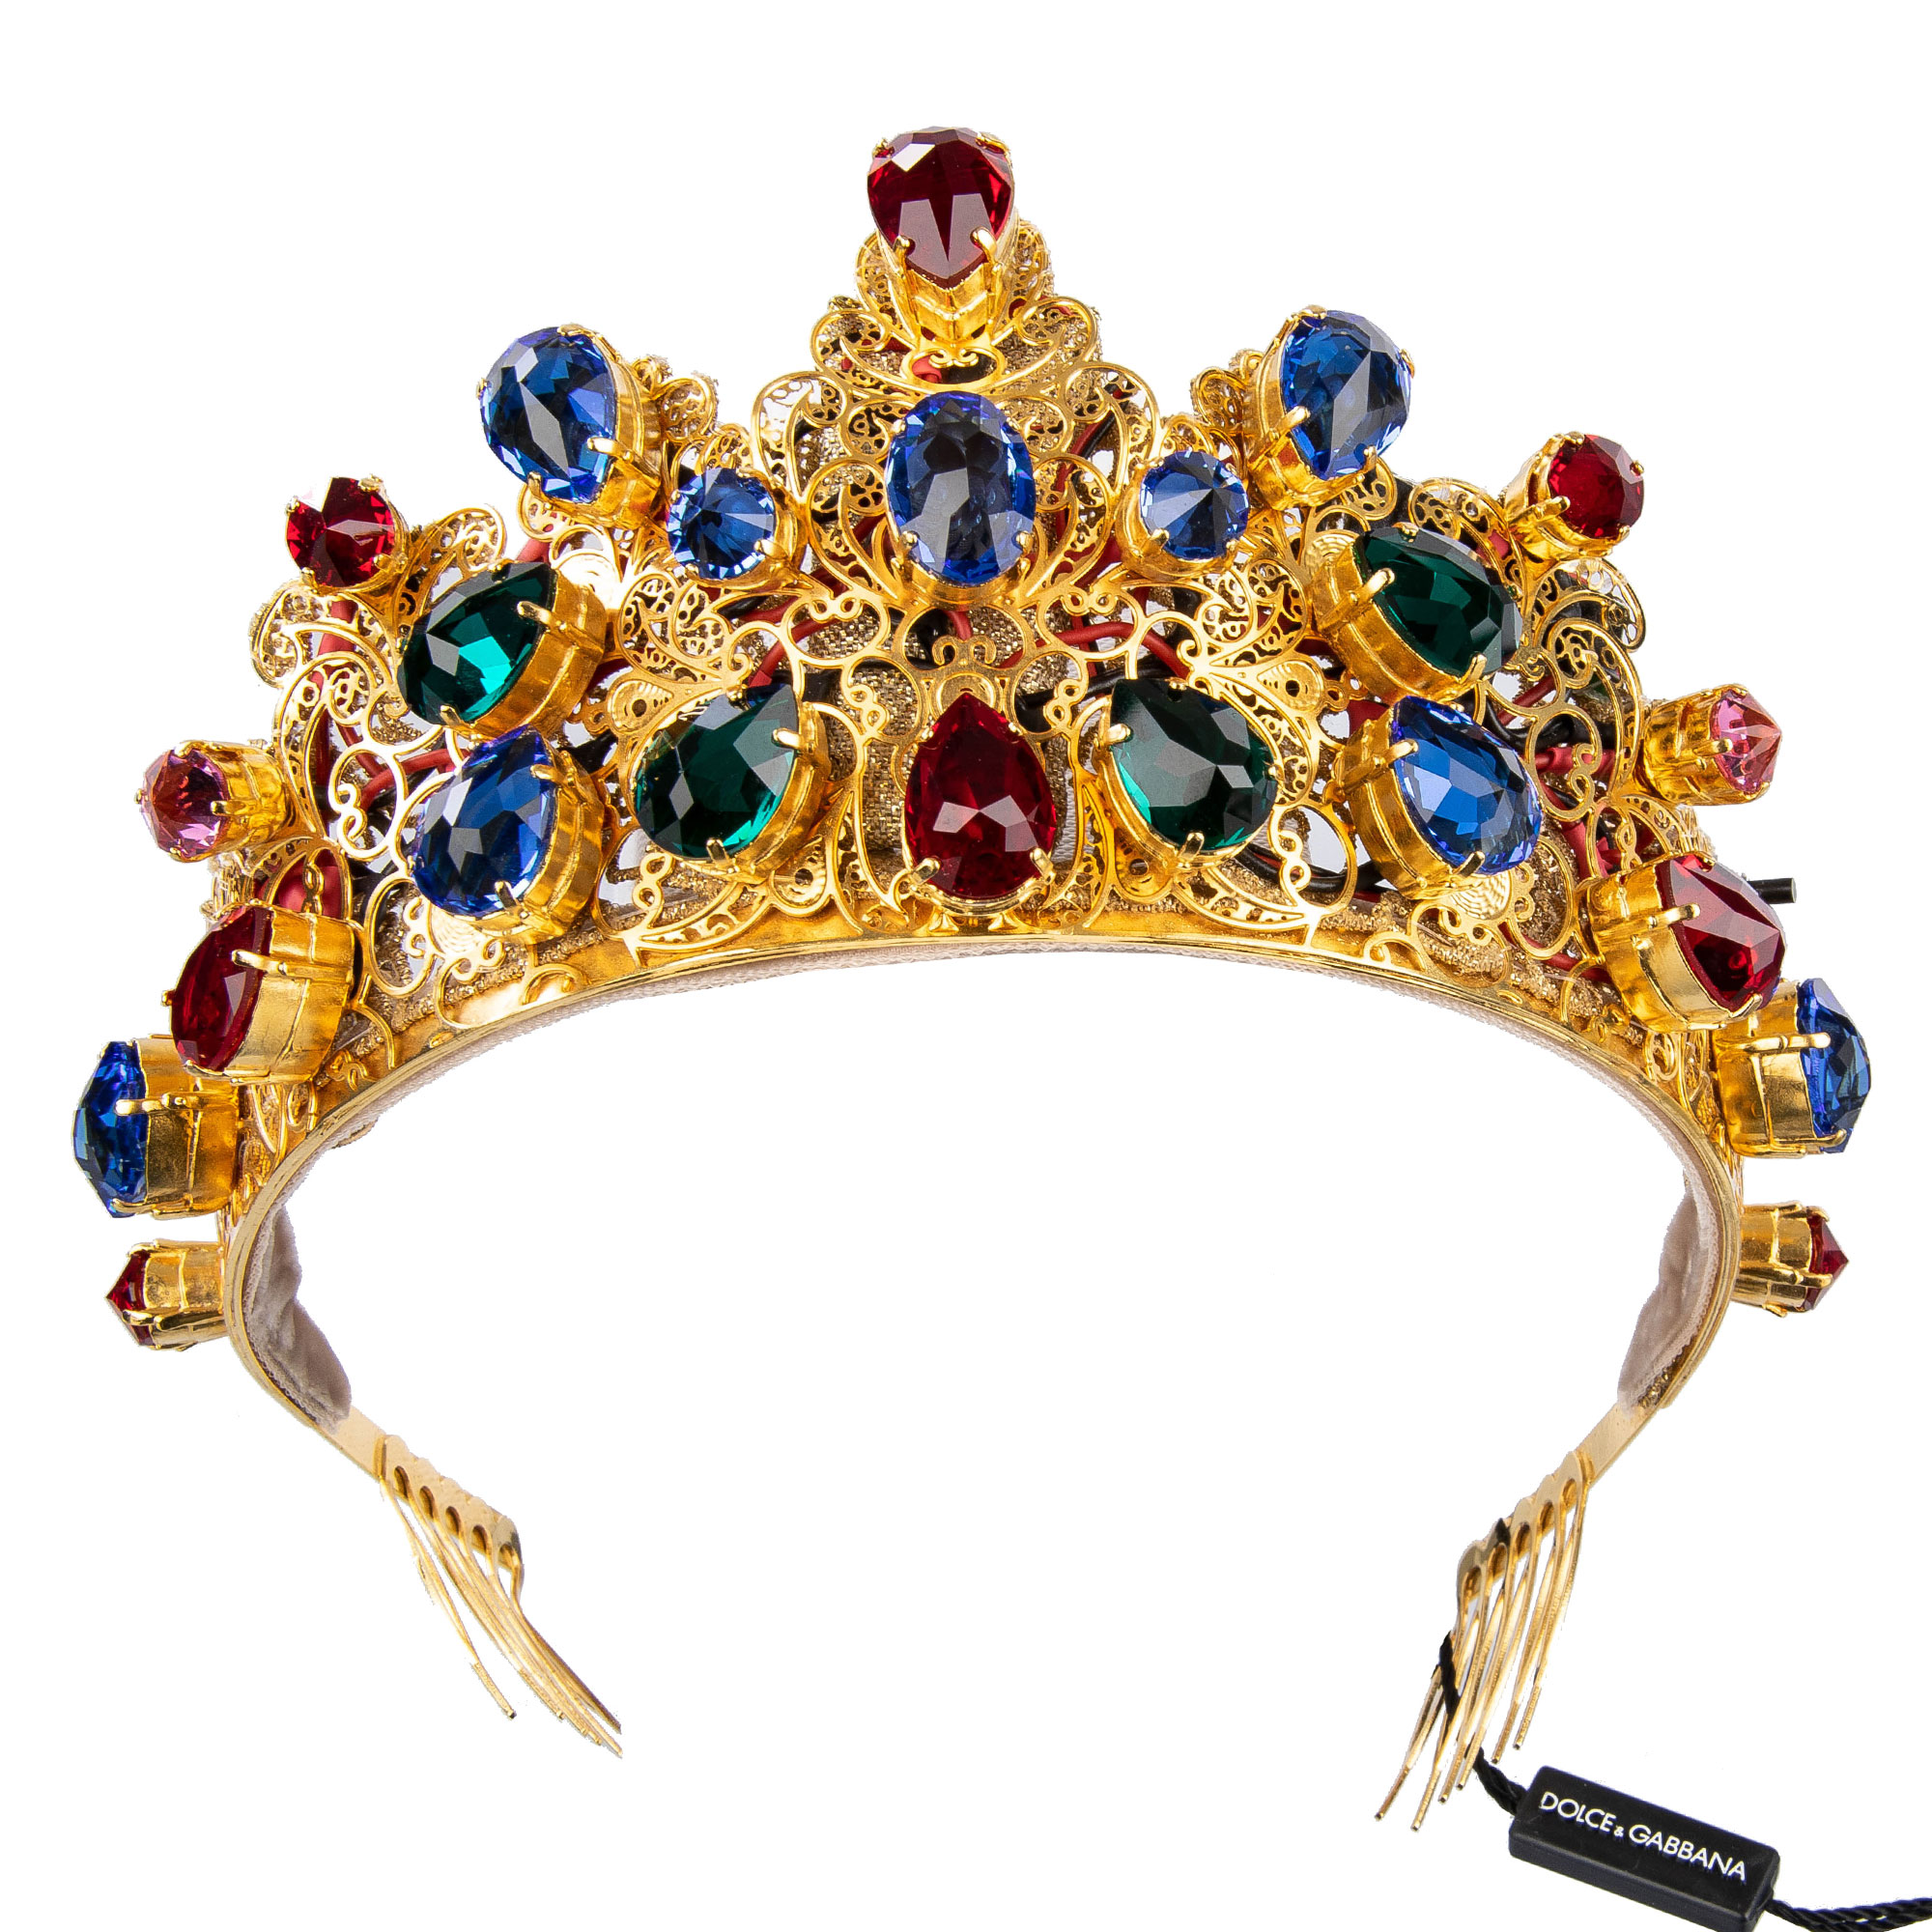 Дольче габбана корона цена. Dolce Gabbana Crown. Дольче Габбана корона. Dolce Gabbana Crown женский. Dolce Gabbana с короной.